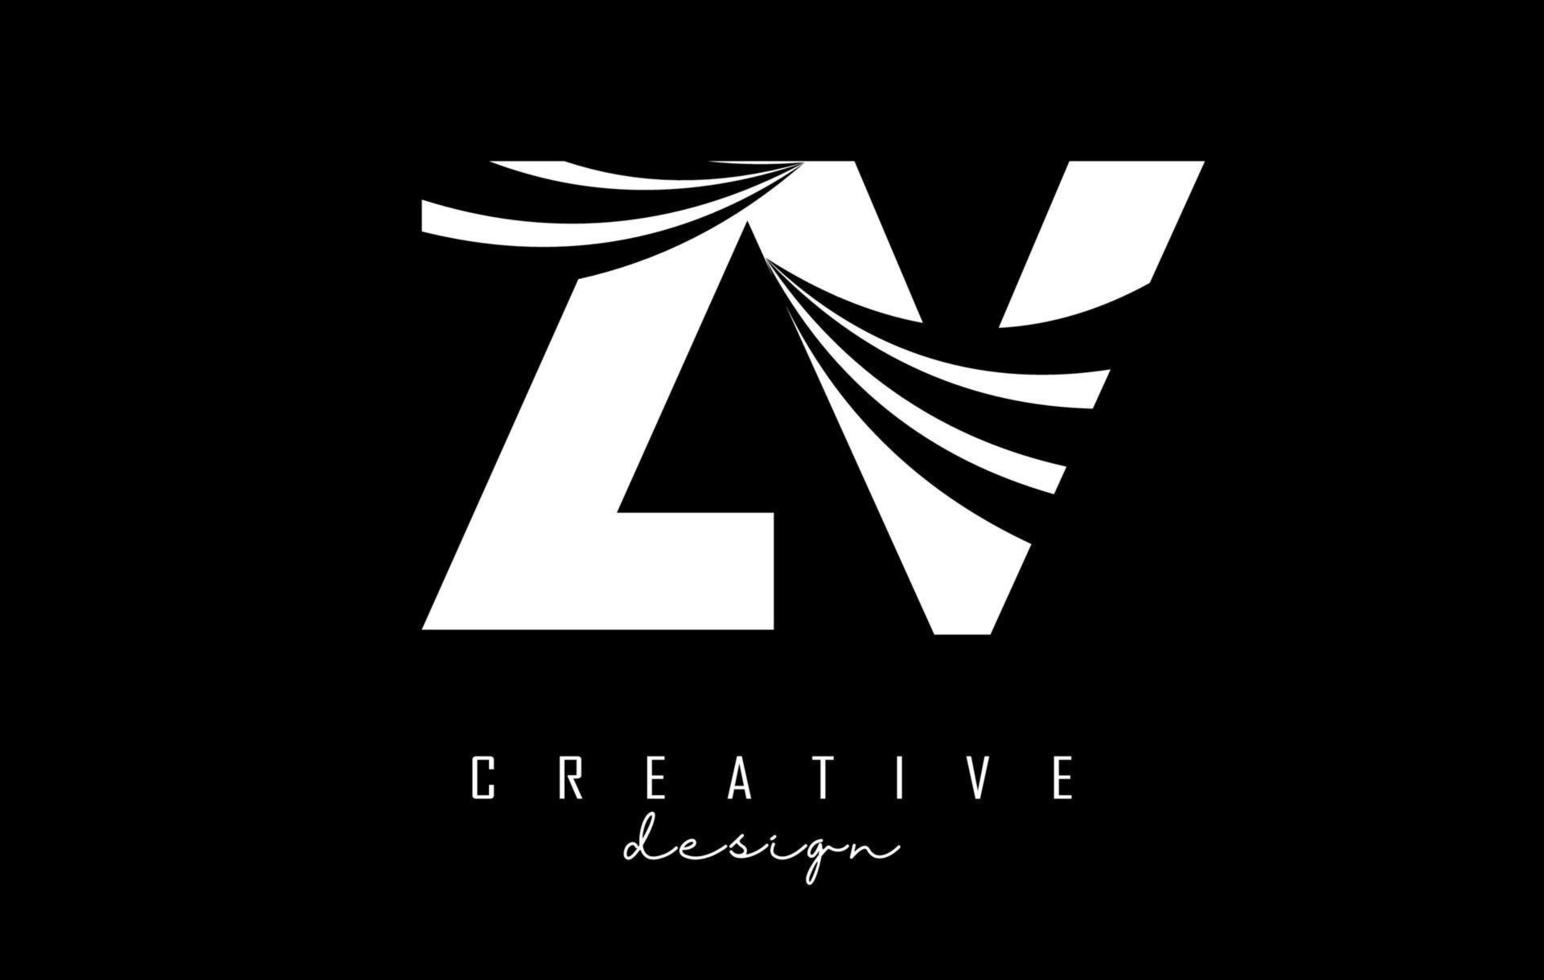 kreative weiße buchstaben zv zv-logo mit führenden linien und straßenkonzeptdesign. Buchstaben mit geometrischem Design. vektor